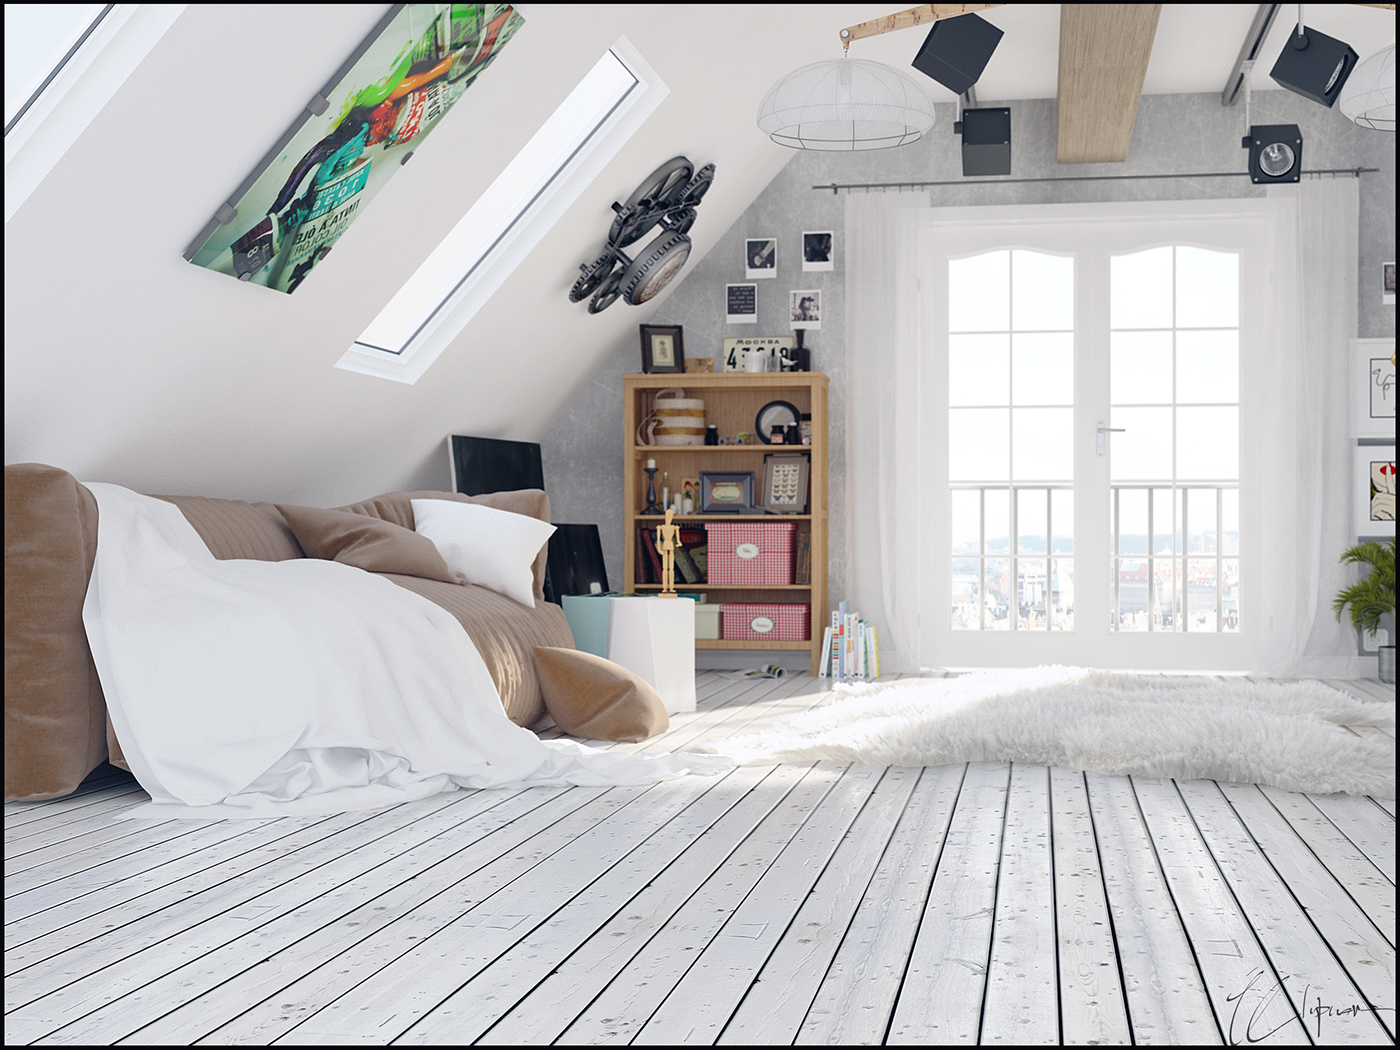 bireysel dizayn oda mobilya 3dsmax vray photoshop interio architect